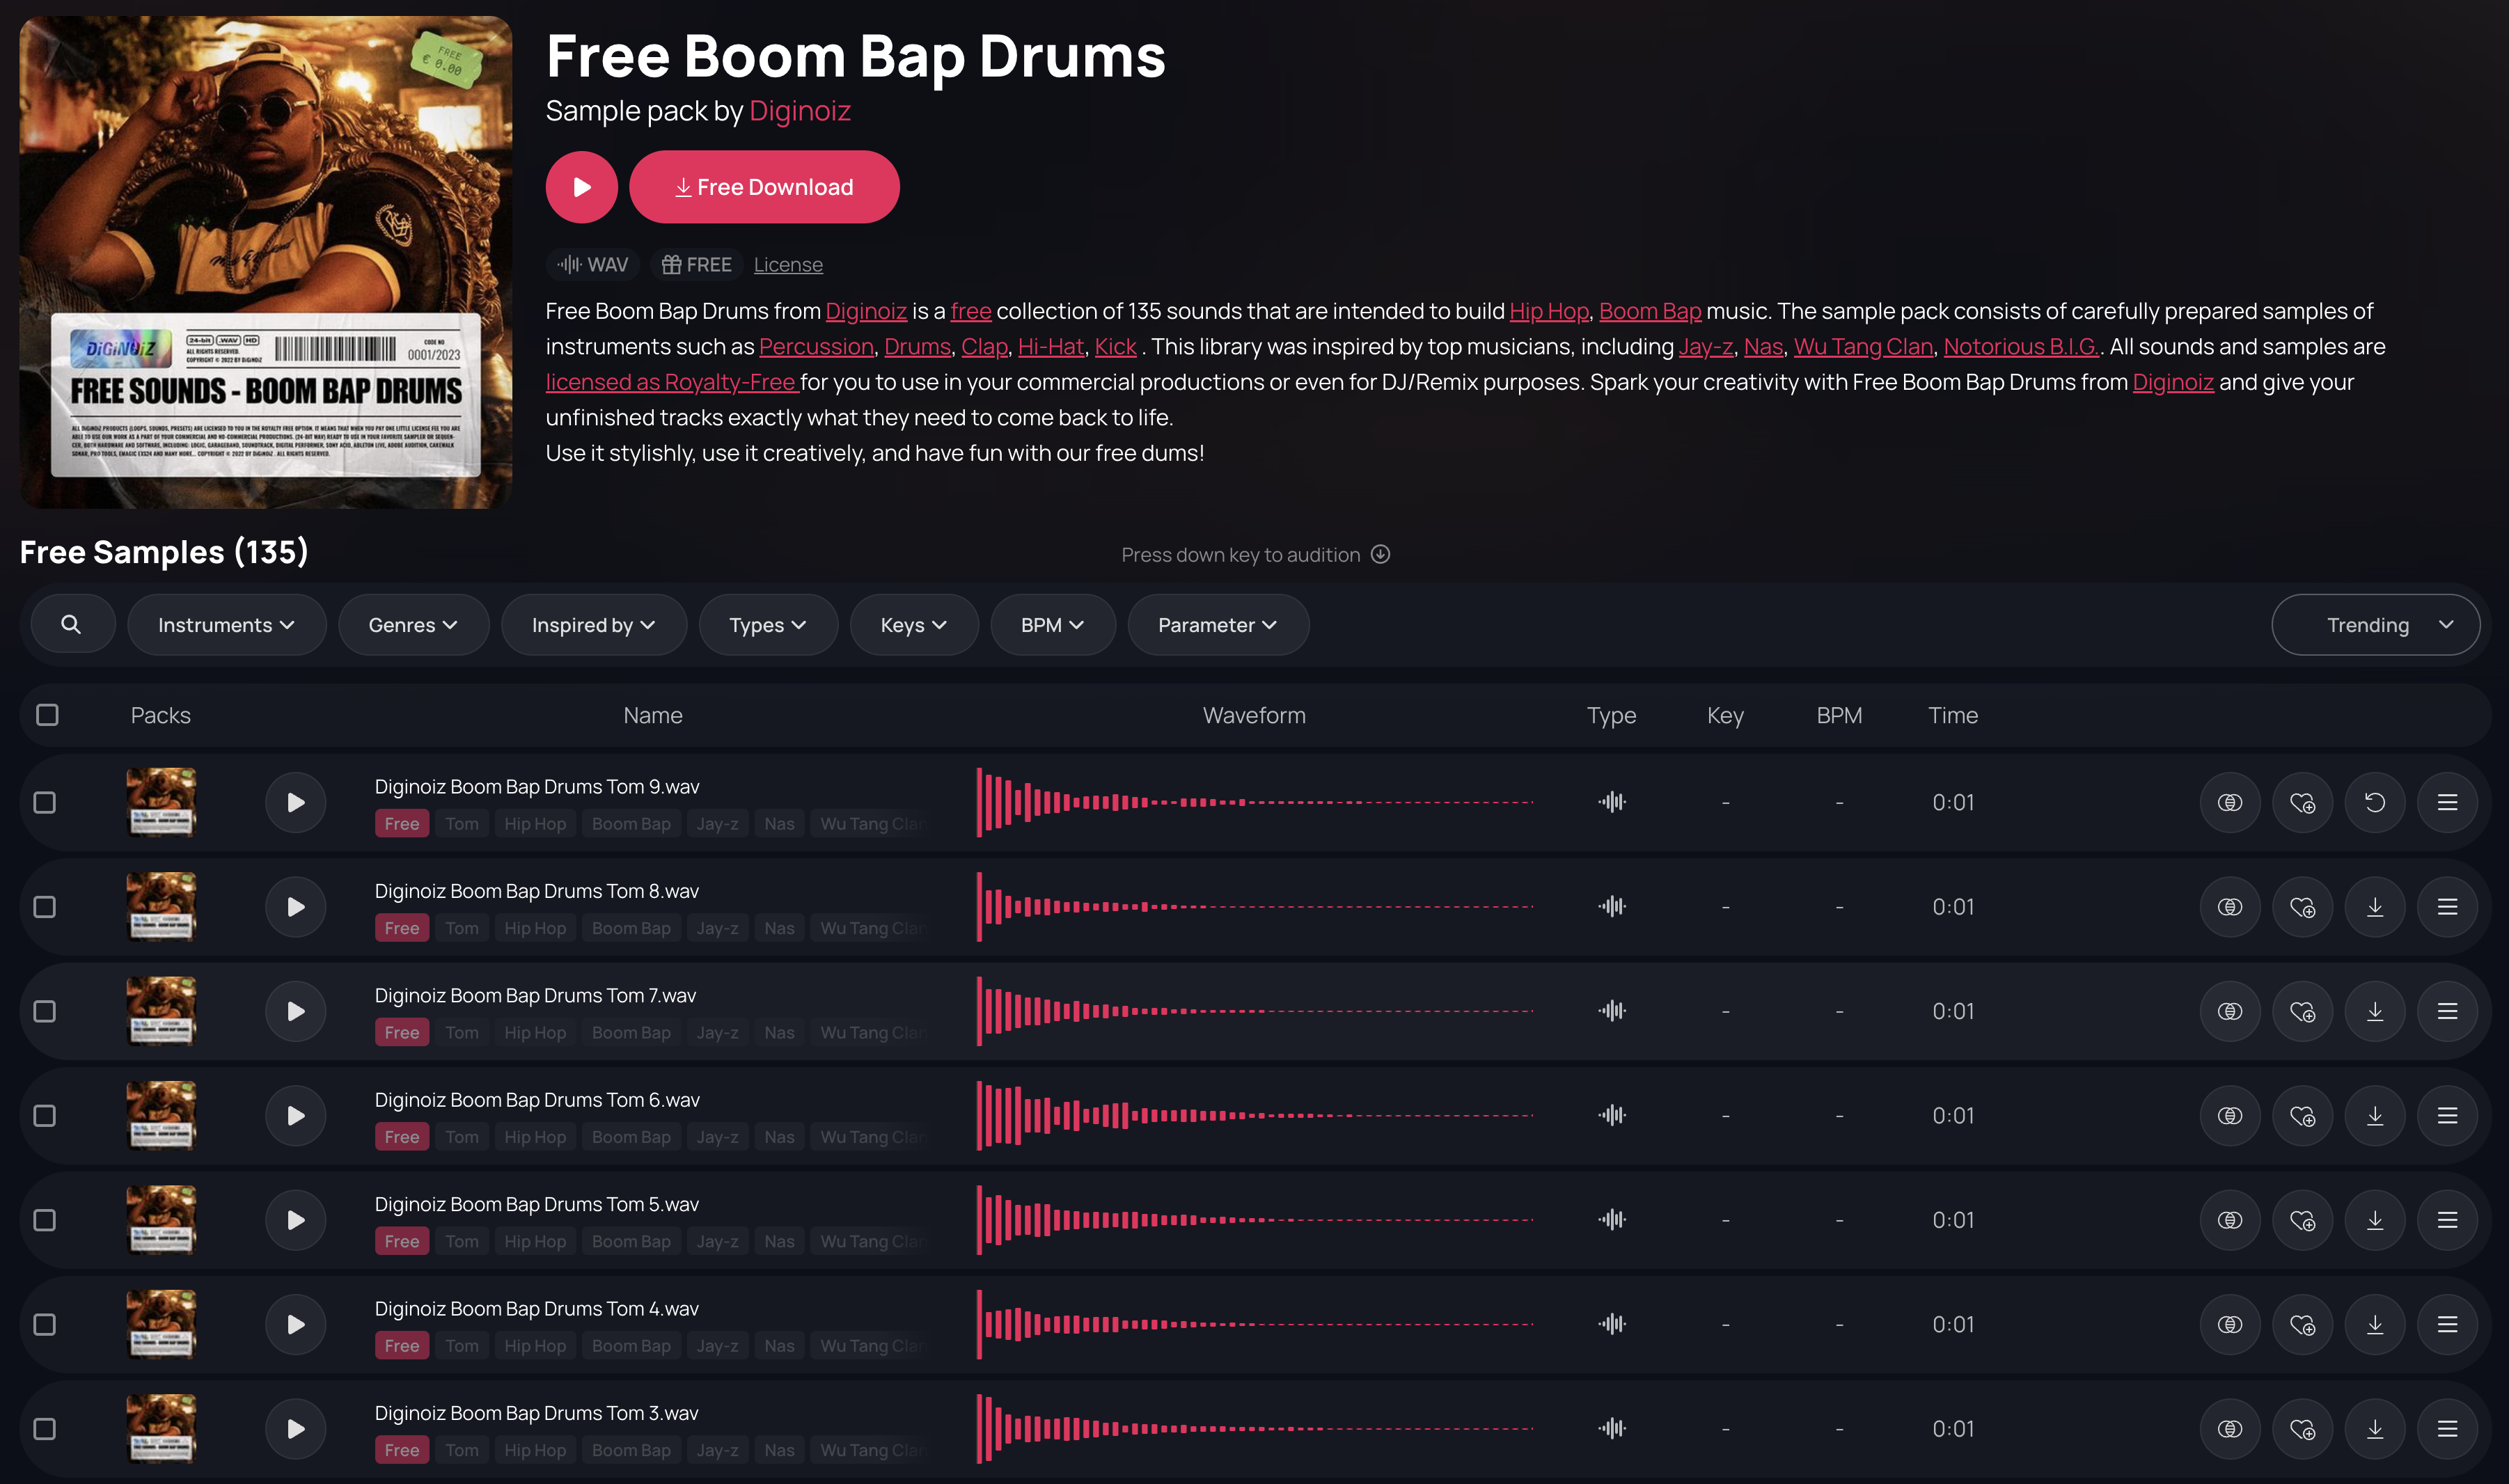 Free Boom Bap Drums on Slooply